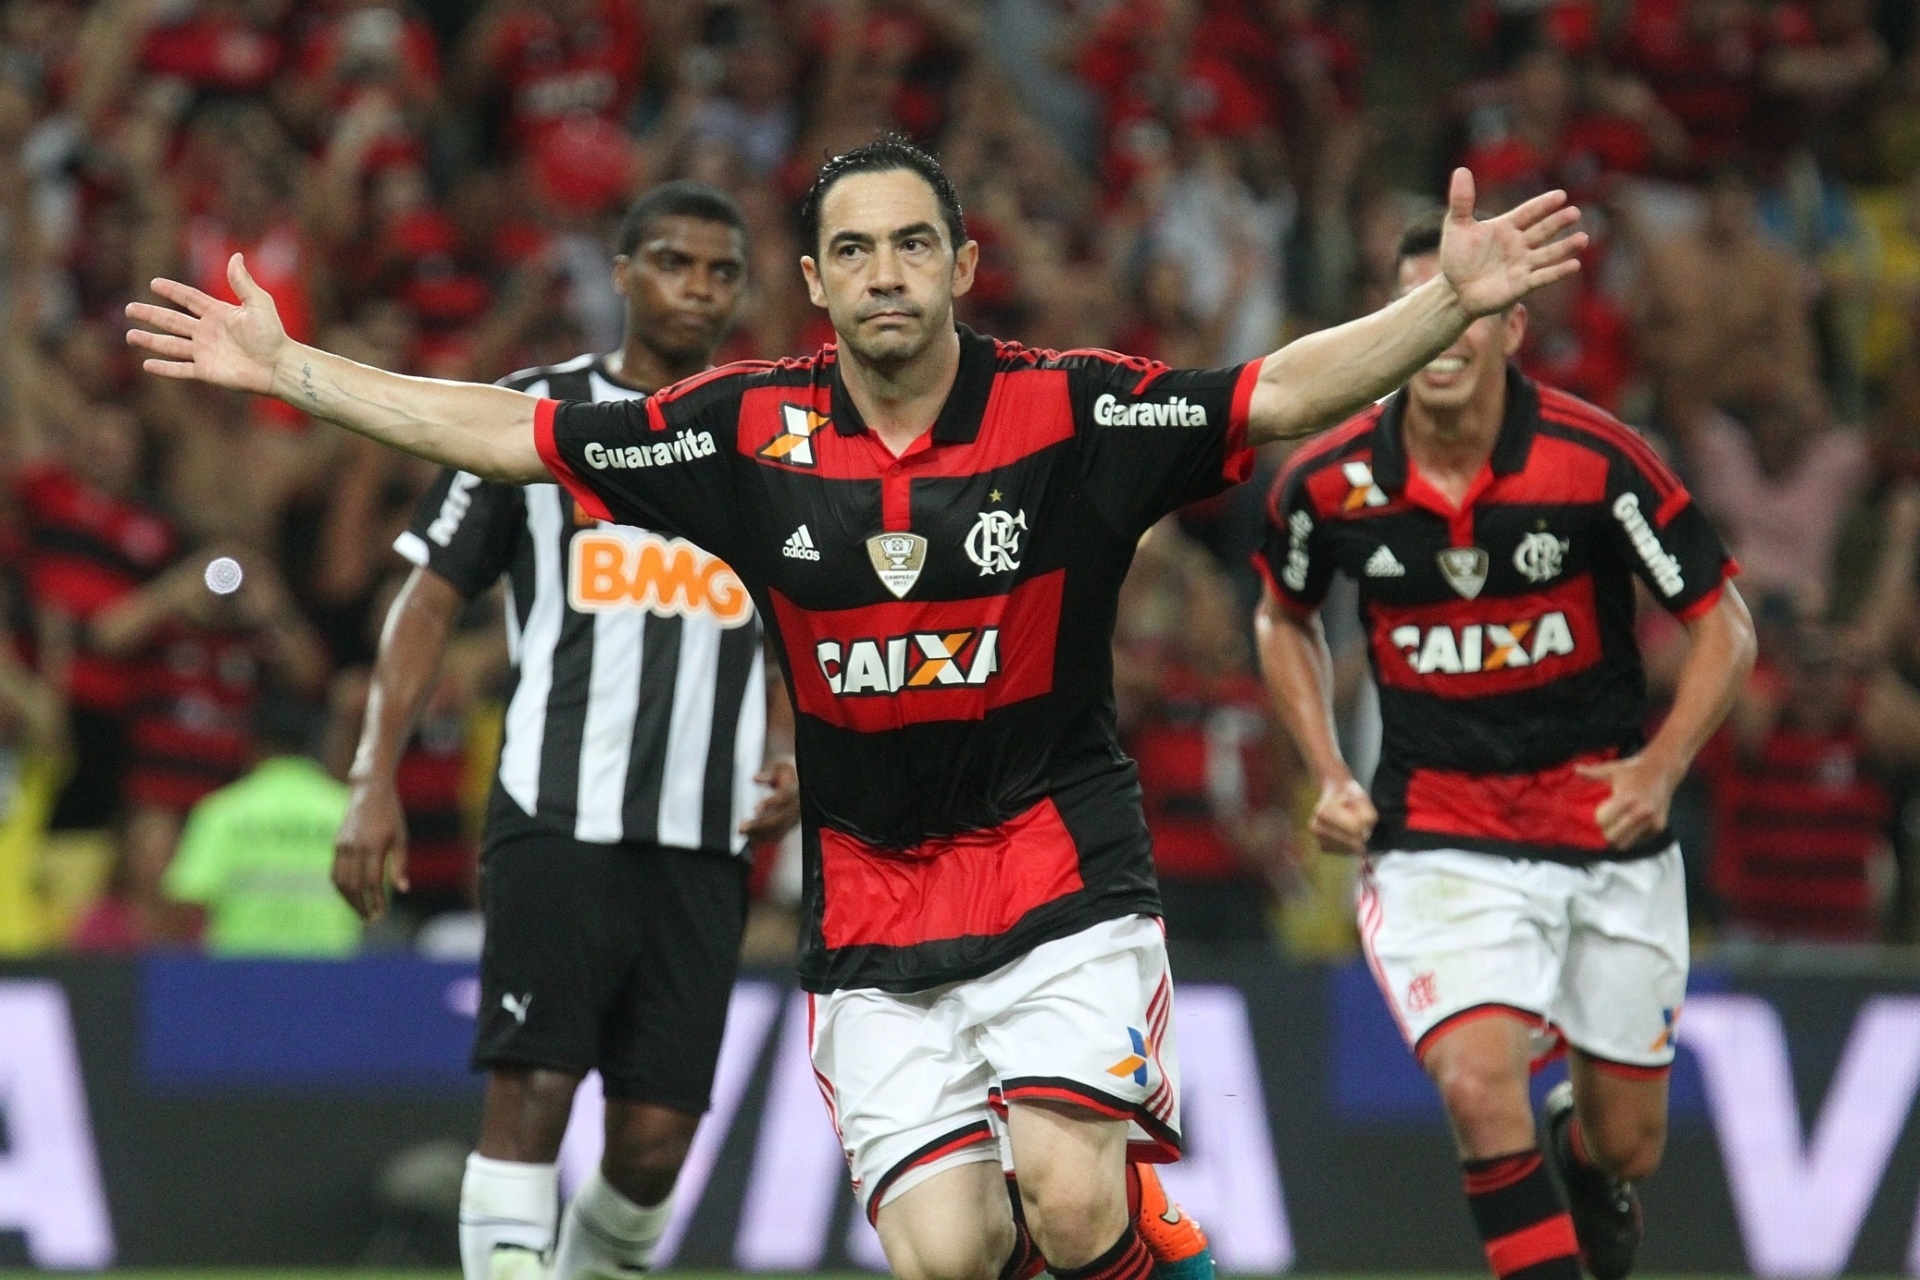 Quantos escanteios teve no jogo do Flamengo e Atlético?